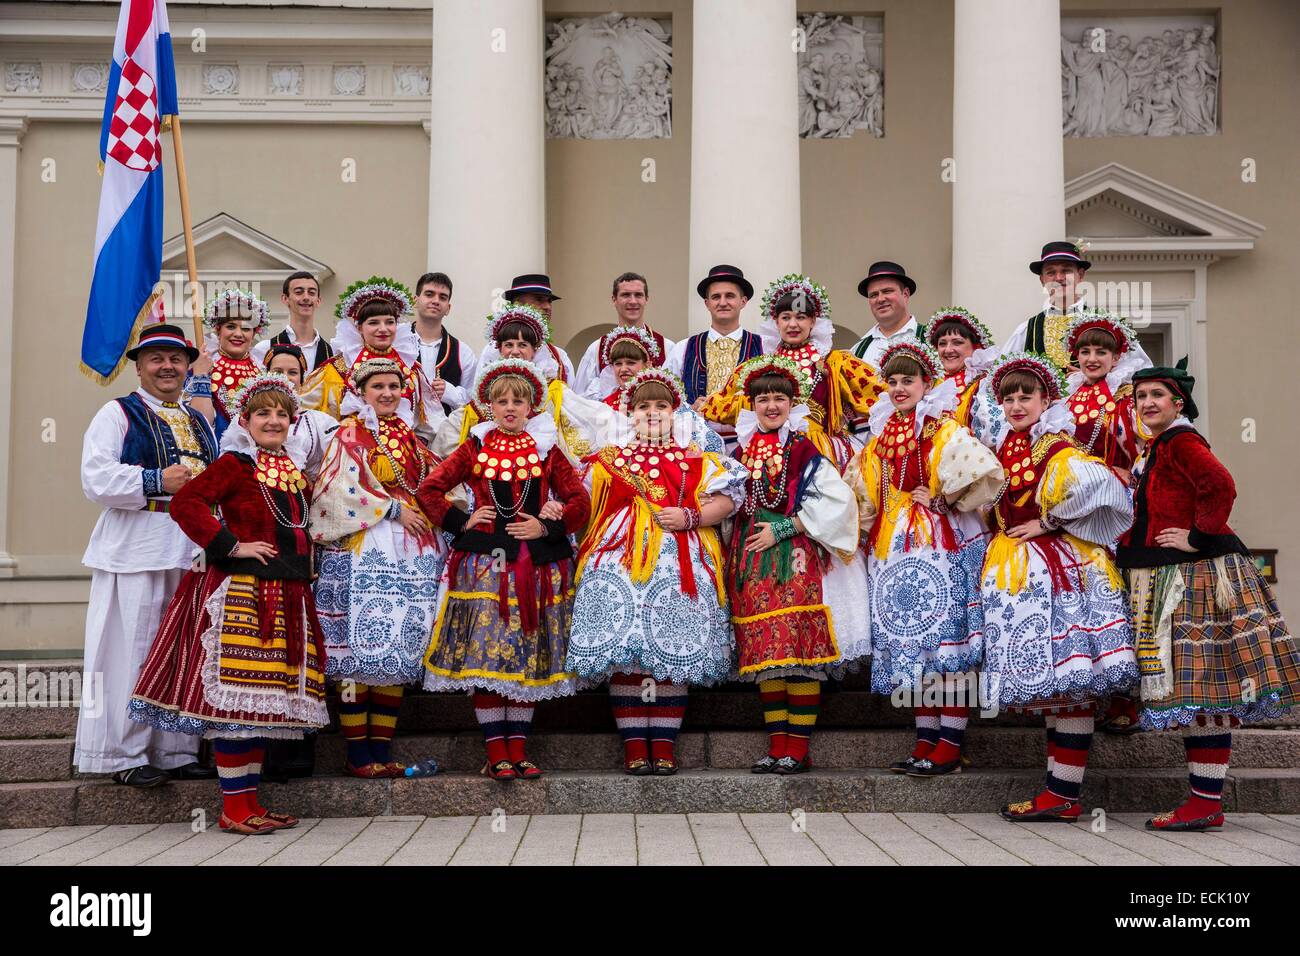 La Lituanie (pays baltes), Vilnius, centre historique, classé au Patrimoine Mondial par l'UNESCO, le groupe folklorique grecque à l'occasion de la fête de couronnement du roi Mindaugas et de la partie de la chanson qui pose pour la photo souvenir avec le bas Saint Stan Banque D'Images